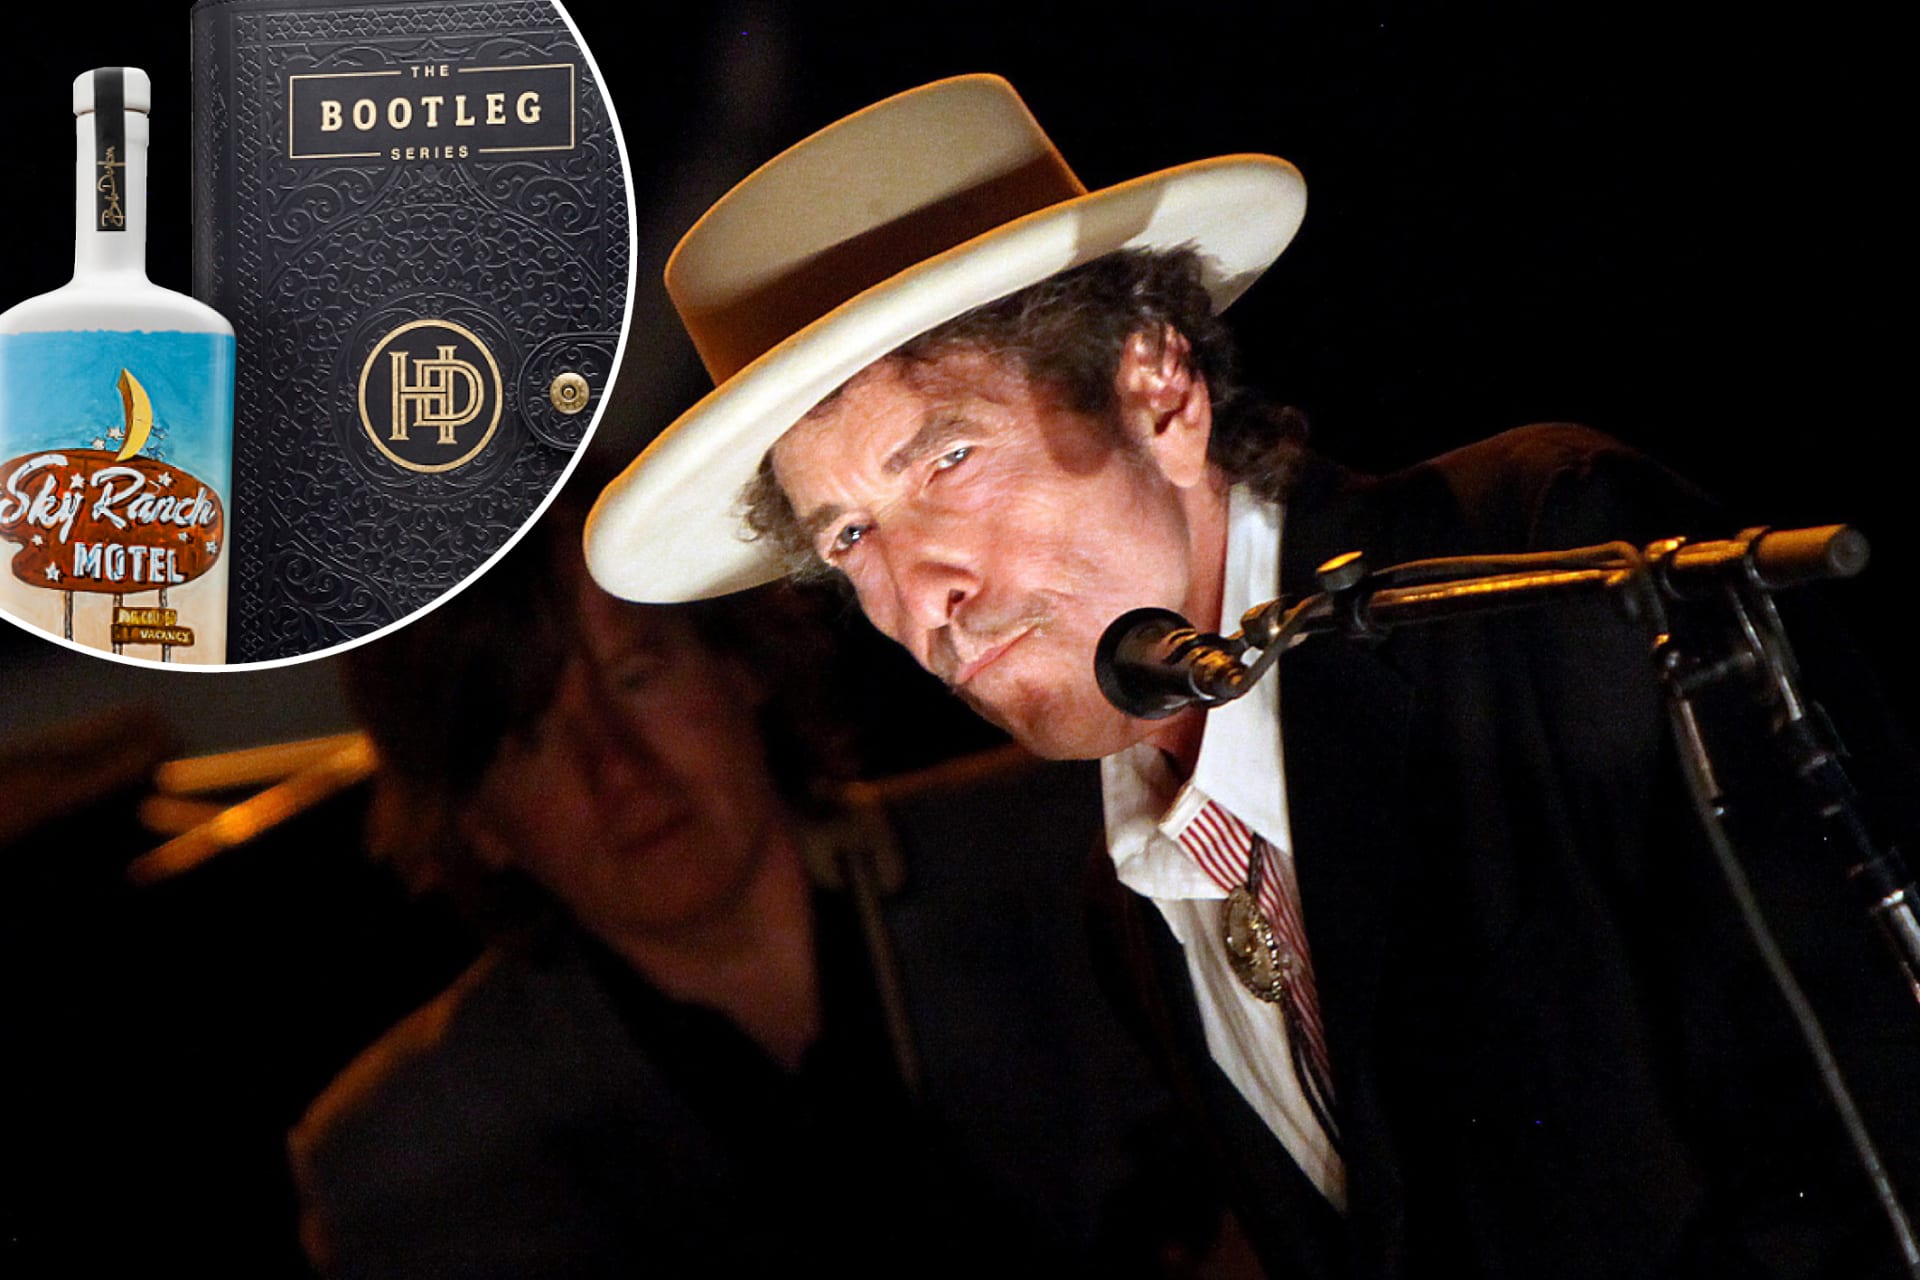 Bob Dylan před časem založil vlastní palírnu Heaven’s Door. Nejnovějším přírůstkem z její produkce je bourbon Bootleg Series V.